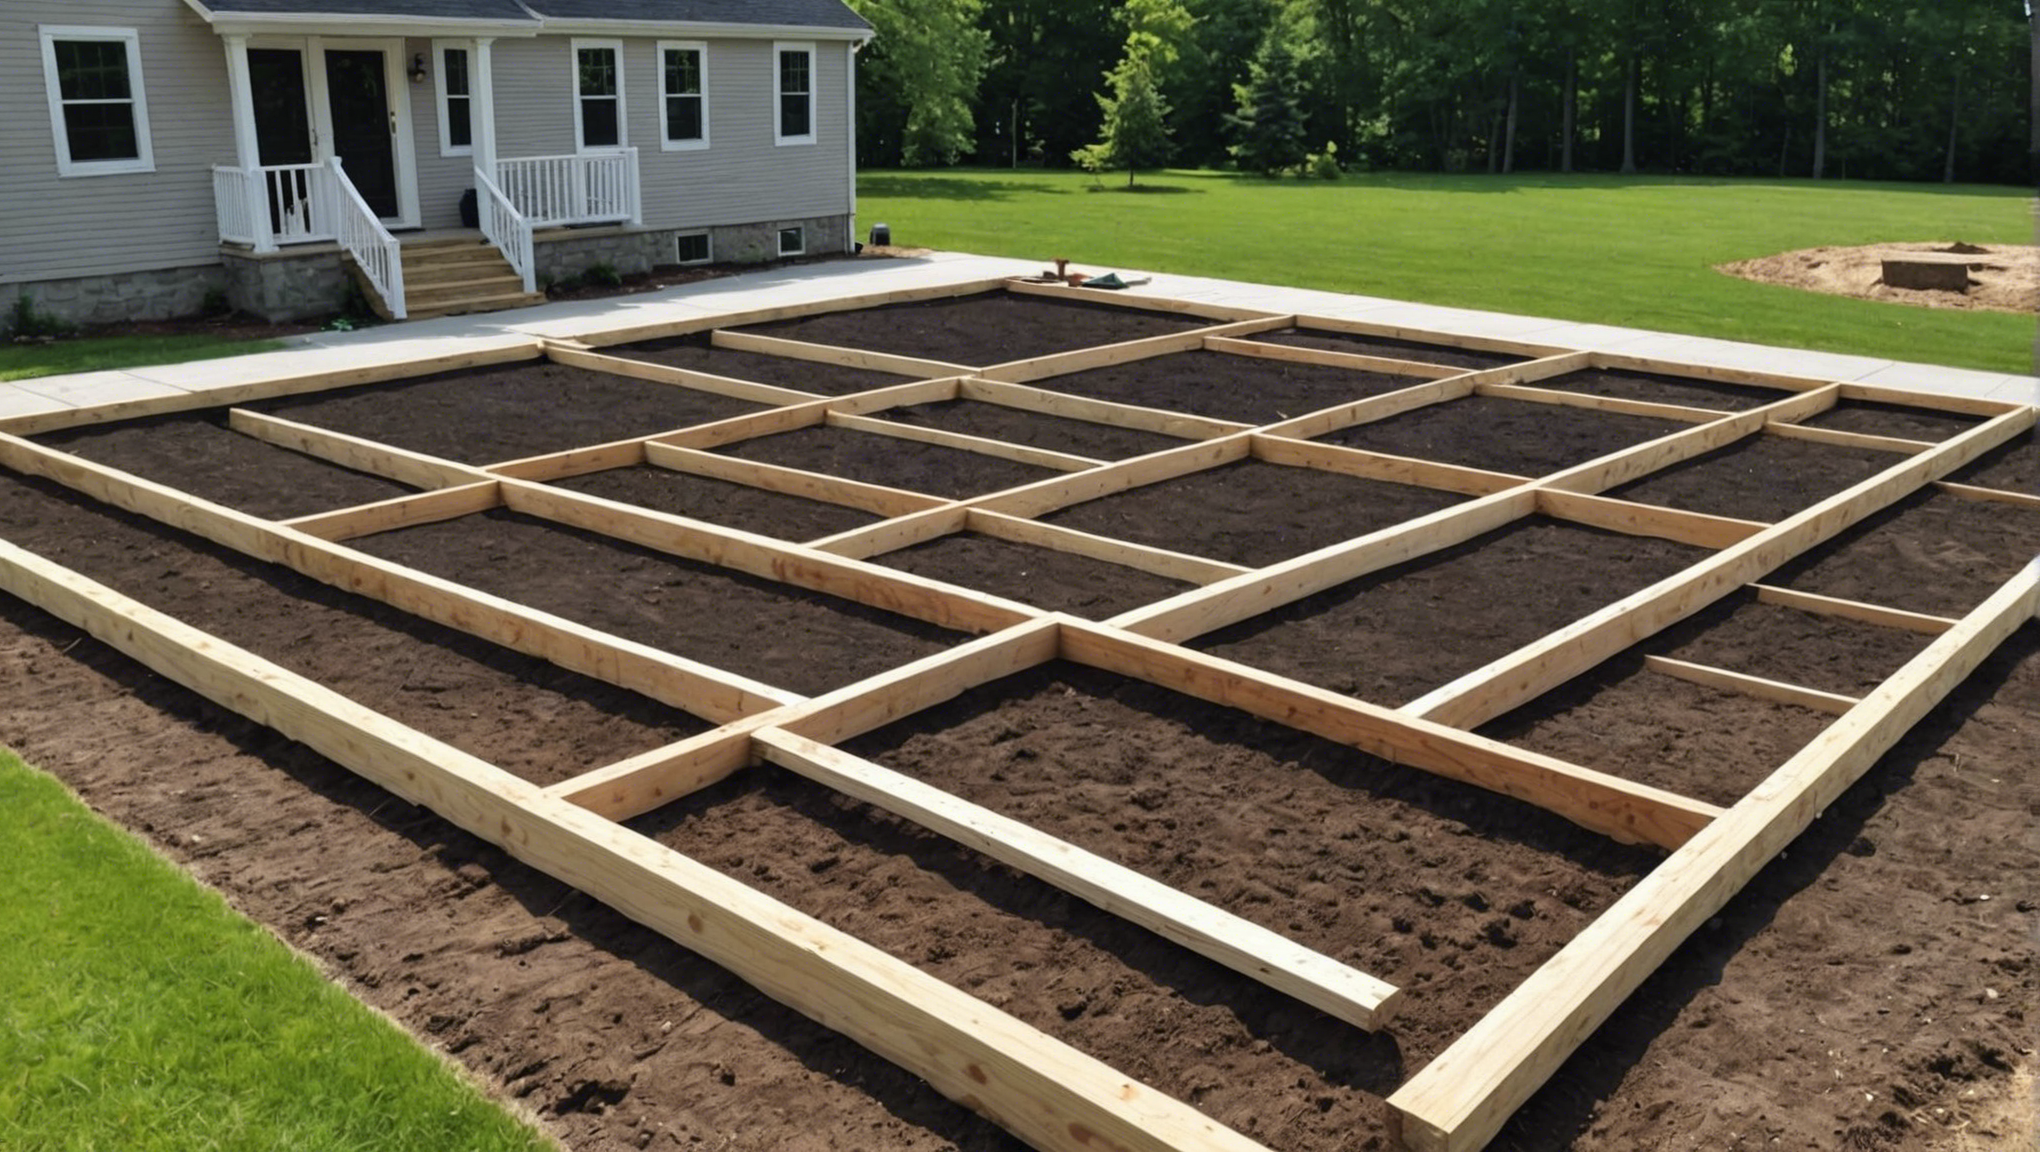 découvrez comment construire une fondation solide pour votre maison grâce à nos conseils pratiques et astuces de construction.